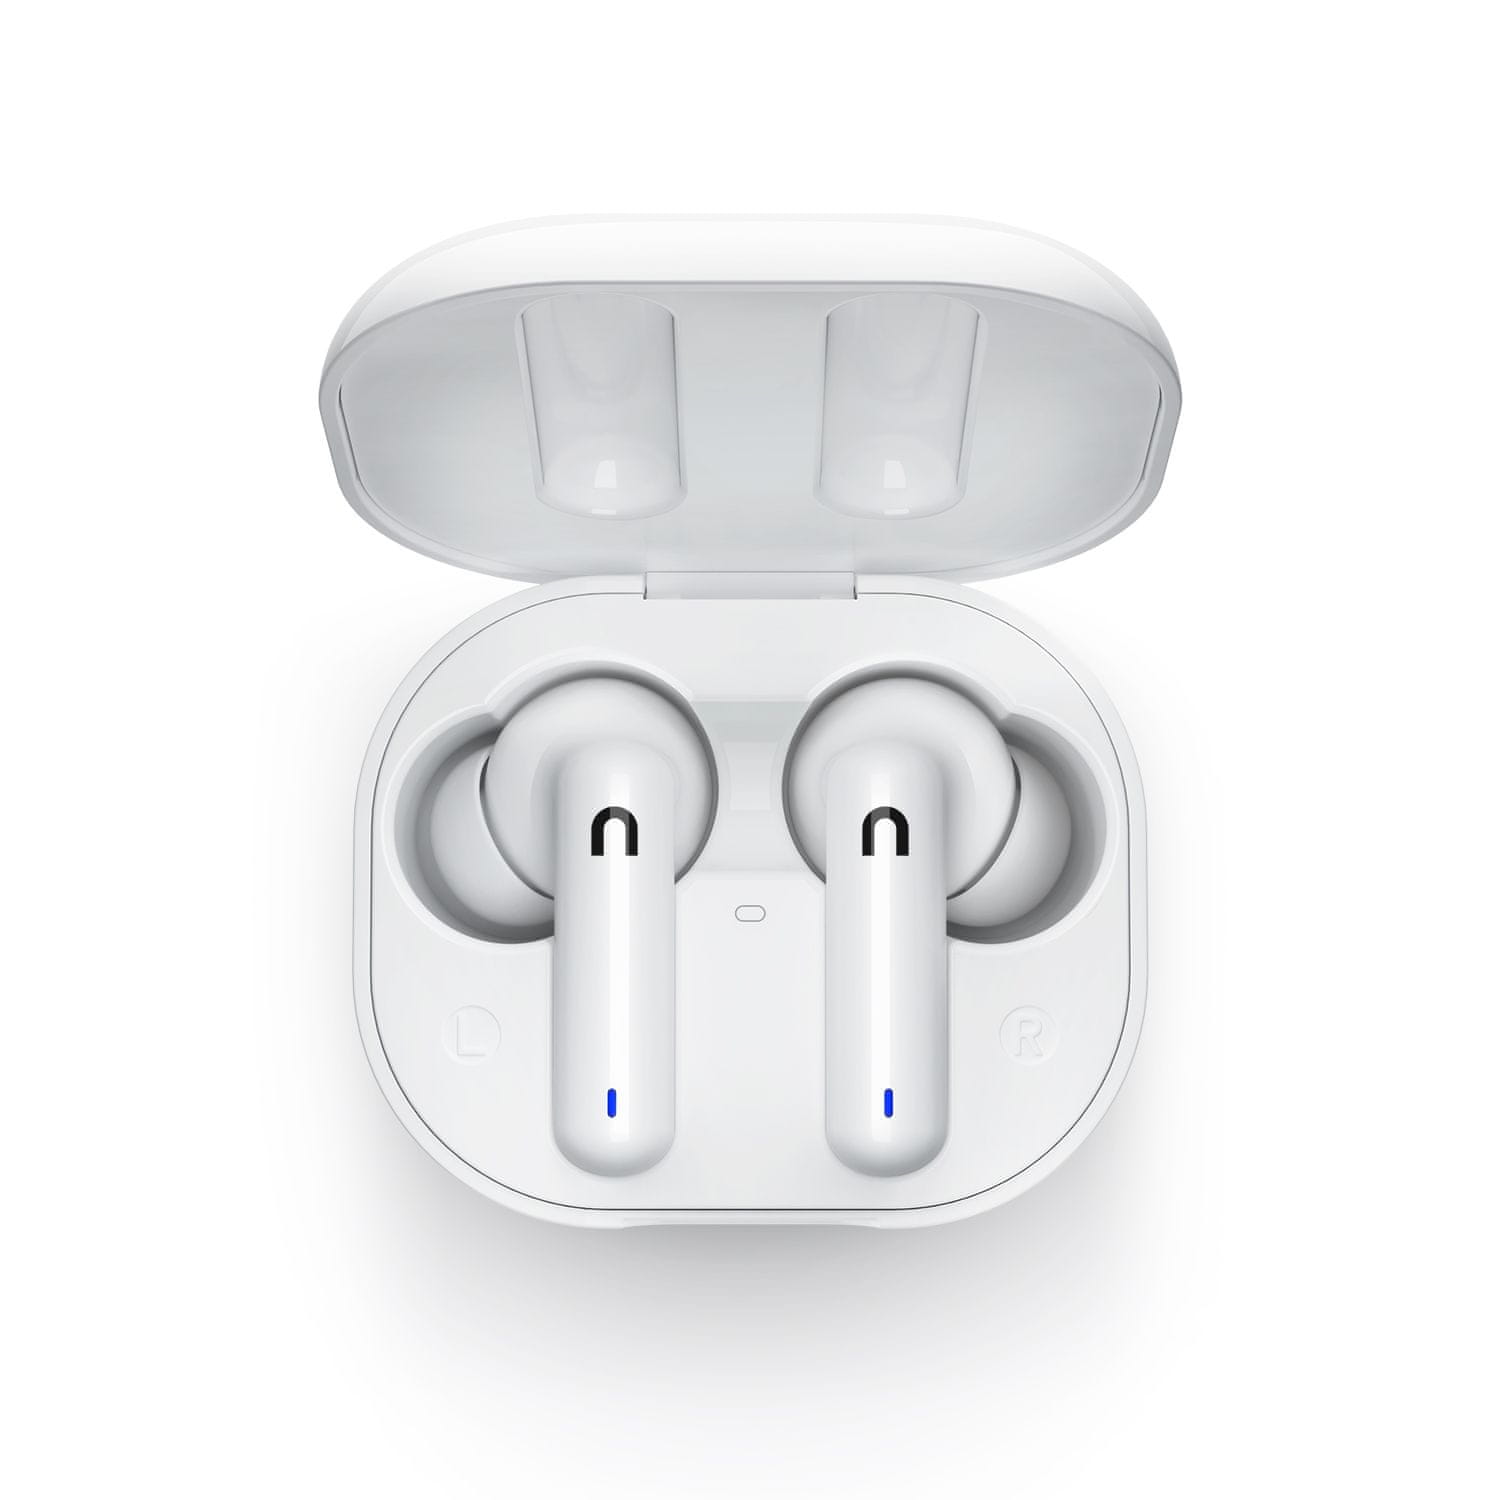  Bluetooth 5.0 sluchátka niceboy hive pin nabíjecí box celkem 18 h provozu na nabití 4 h provozu ipx4 odolnost vodě dotykové ovládání na sluchátkách podpora hlasových asistentů handsfree mikrofon 